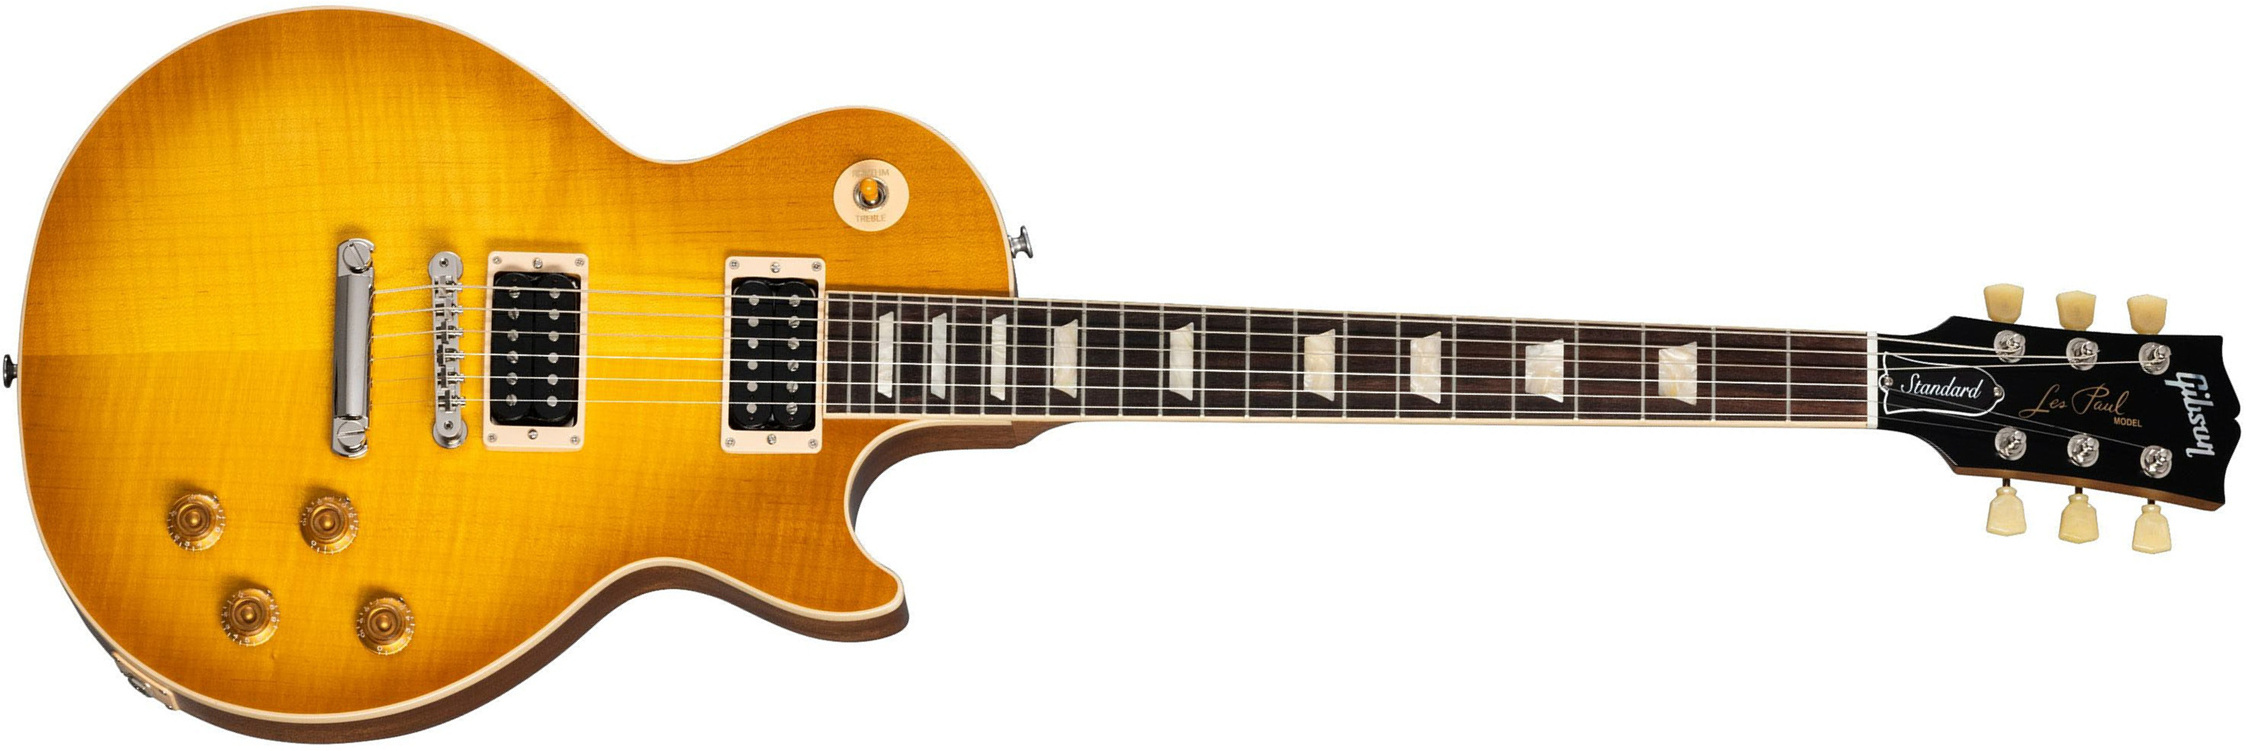 Gibson Les Paul Standard 50s Faded Original 2h Ht Rw - Vintage Honey Burst - Enkel gesneden elektrische gitaar - Main picture